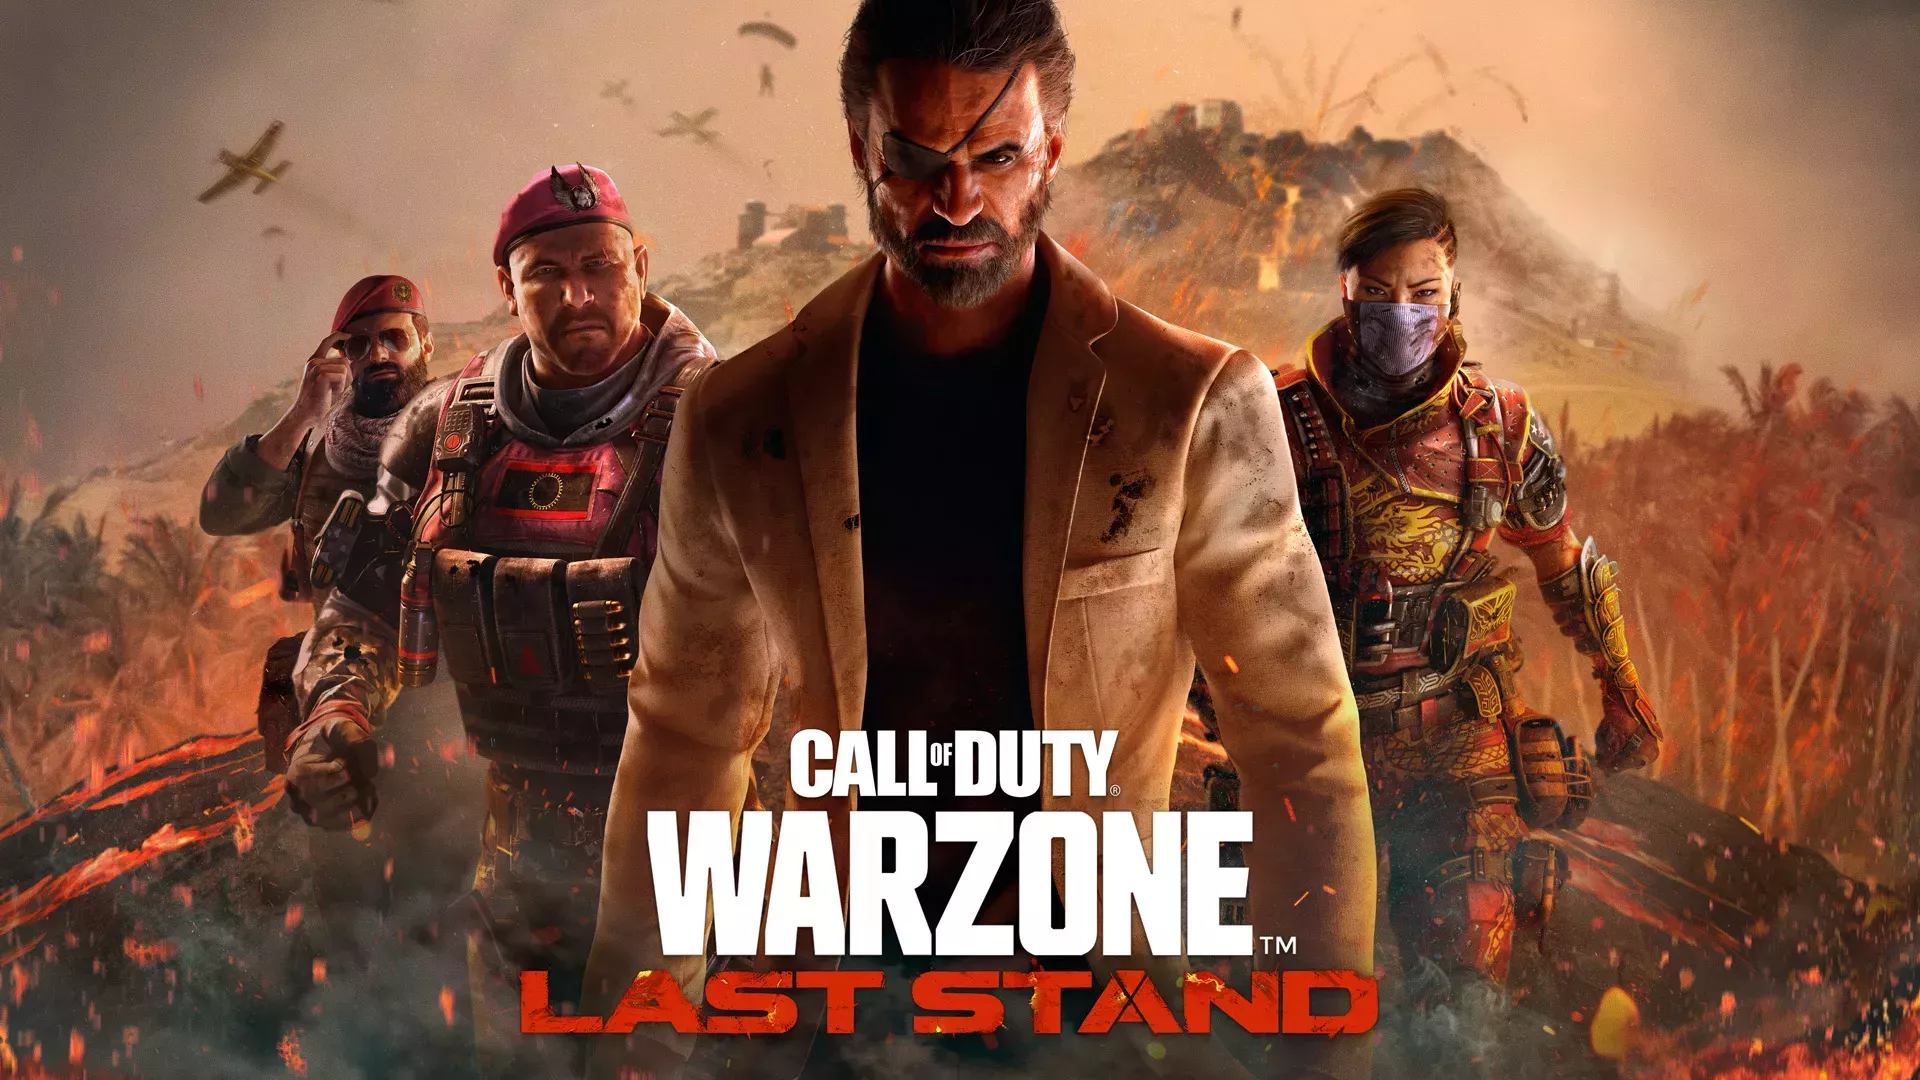 La última temporada de Call of Duty Vanguard y Warzone trae de vuelta a los villanos clásicos